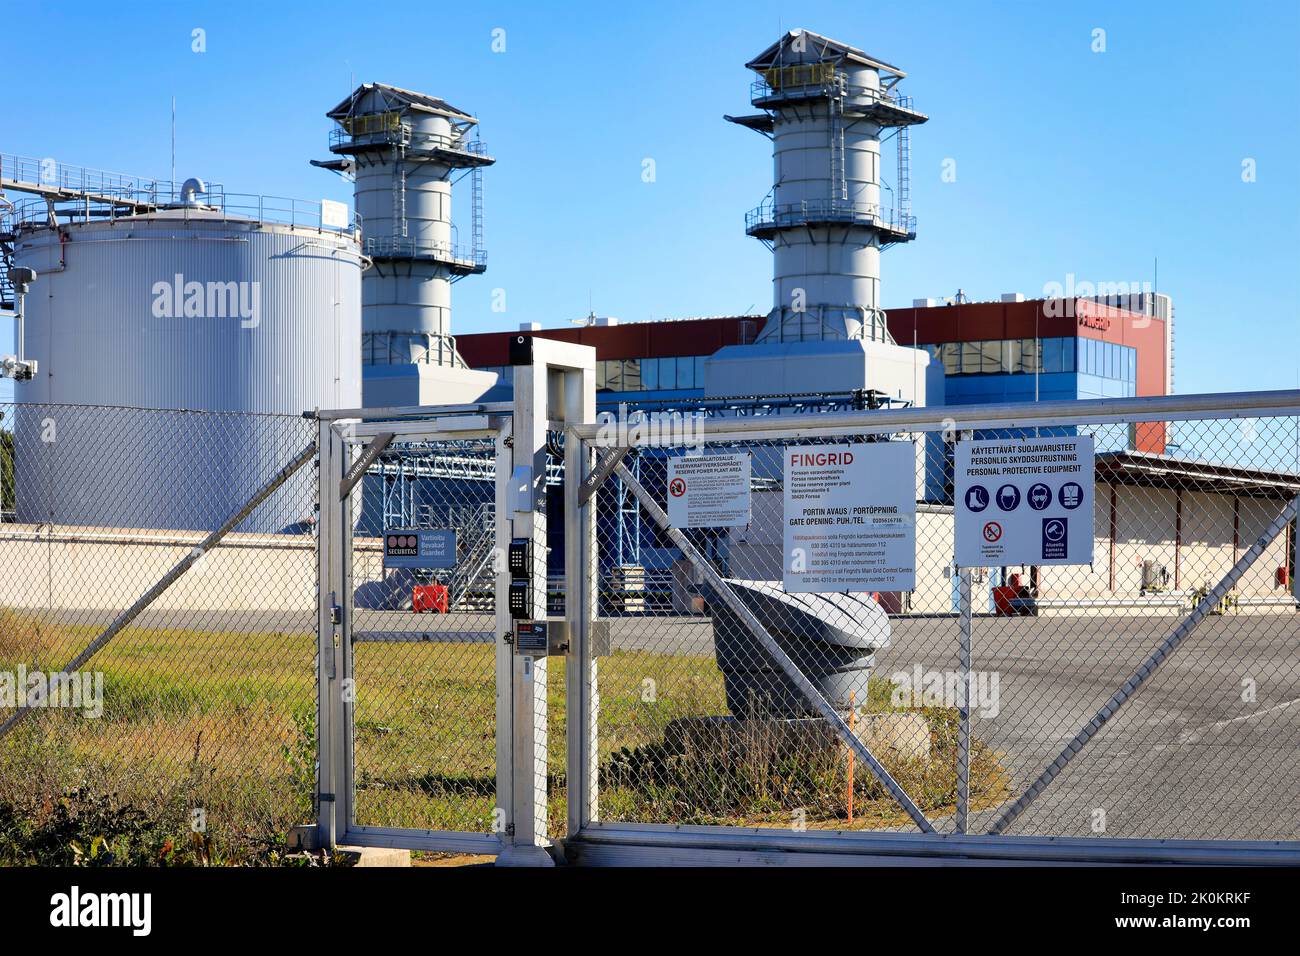 Fingrid Oyj Forssa Riserva centrale elettrica con due turbine a gas a Forssa, Finlandia. Settembre 9, 2022. Foto Stock